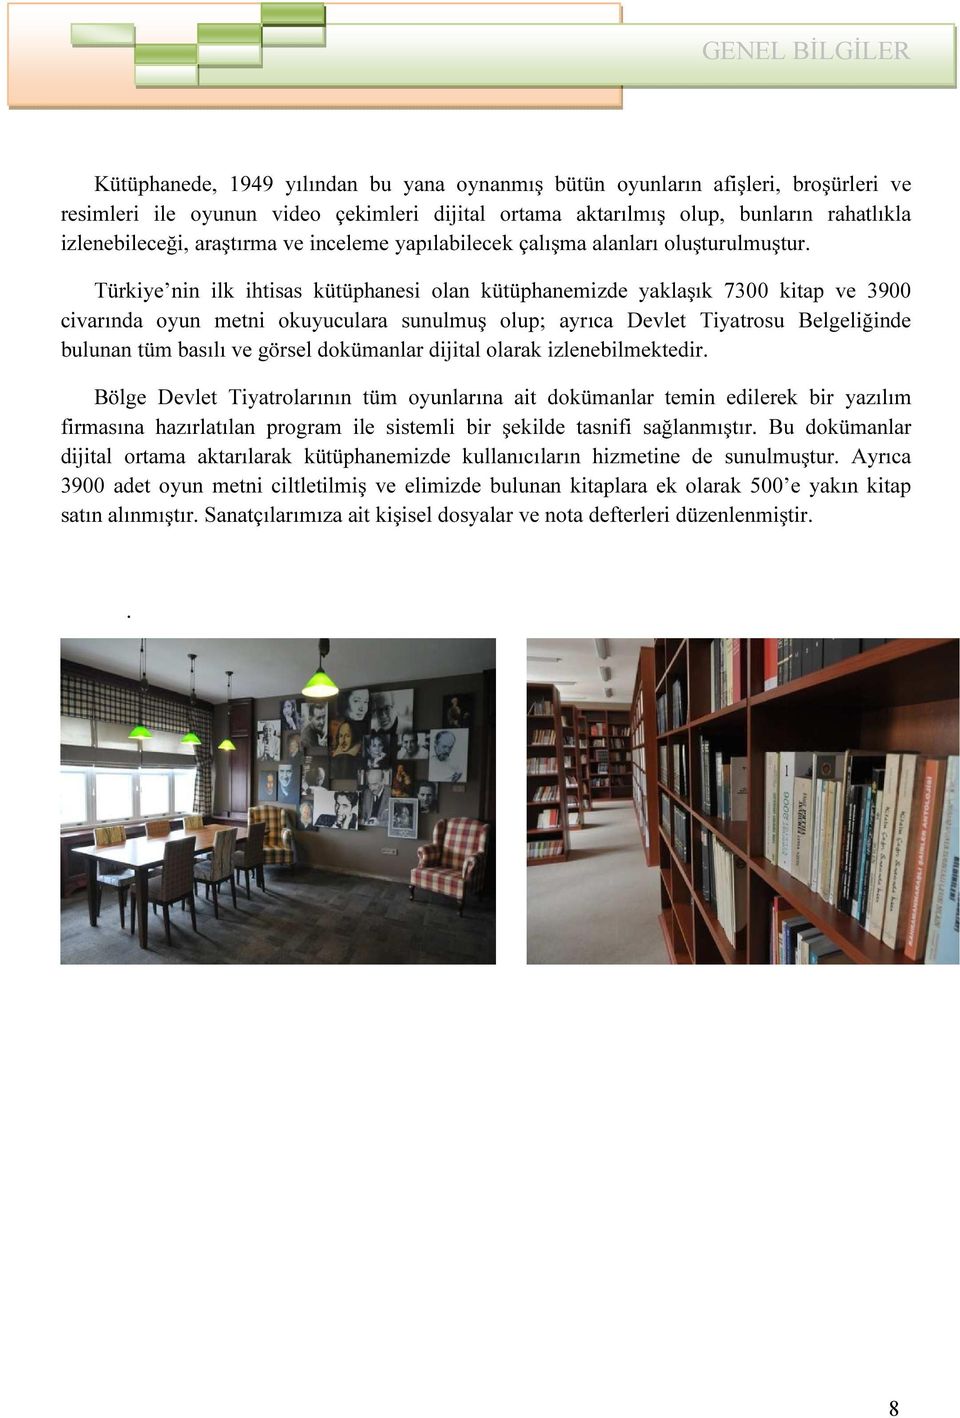 Türkiye nin ilk ihtisas kütüphanesi olan kütüphanemizde yaklaşık 7300 kitap ve 3900 civarında oyun metni okuyuculara sunulmuş olup; ayrıca Devlet Tiyatrosu Belgeliğinde bulunan tüm basılı ve görsel